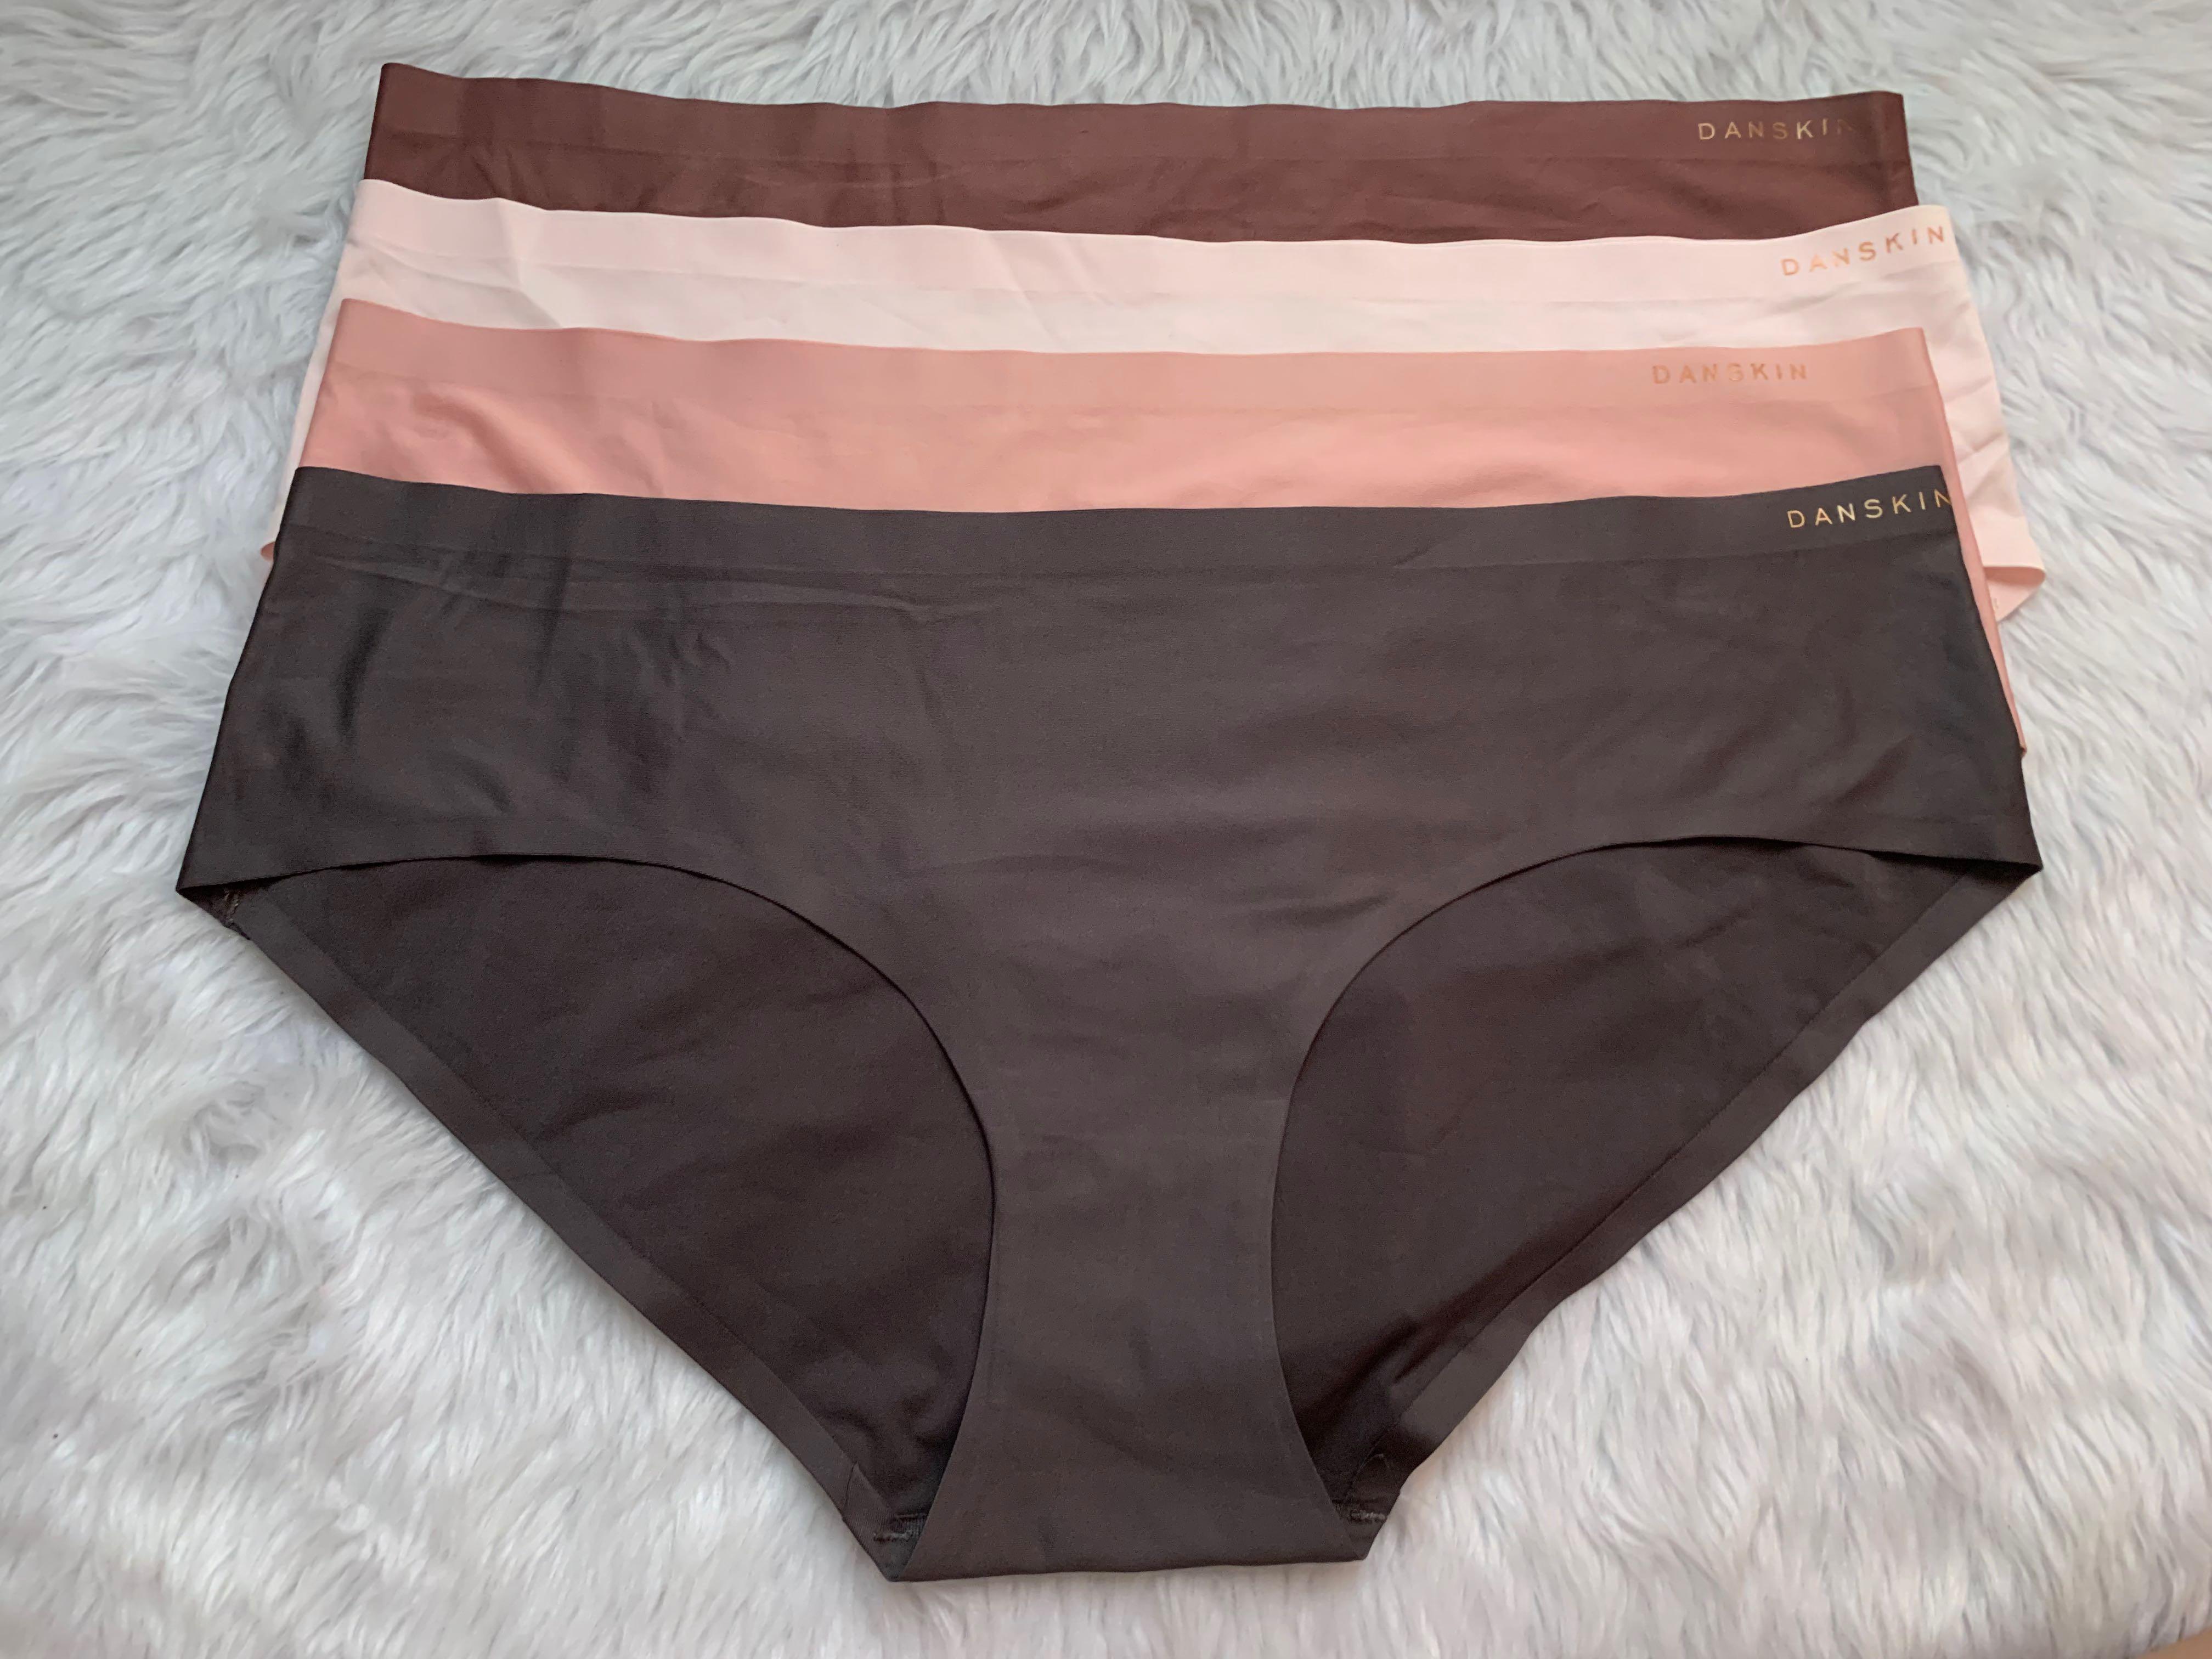 Danskin Panty set -XL, Women's Fashion, Undergarments & Loungewear